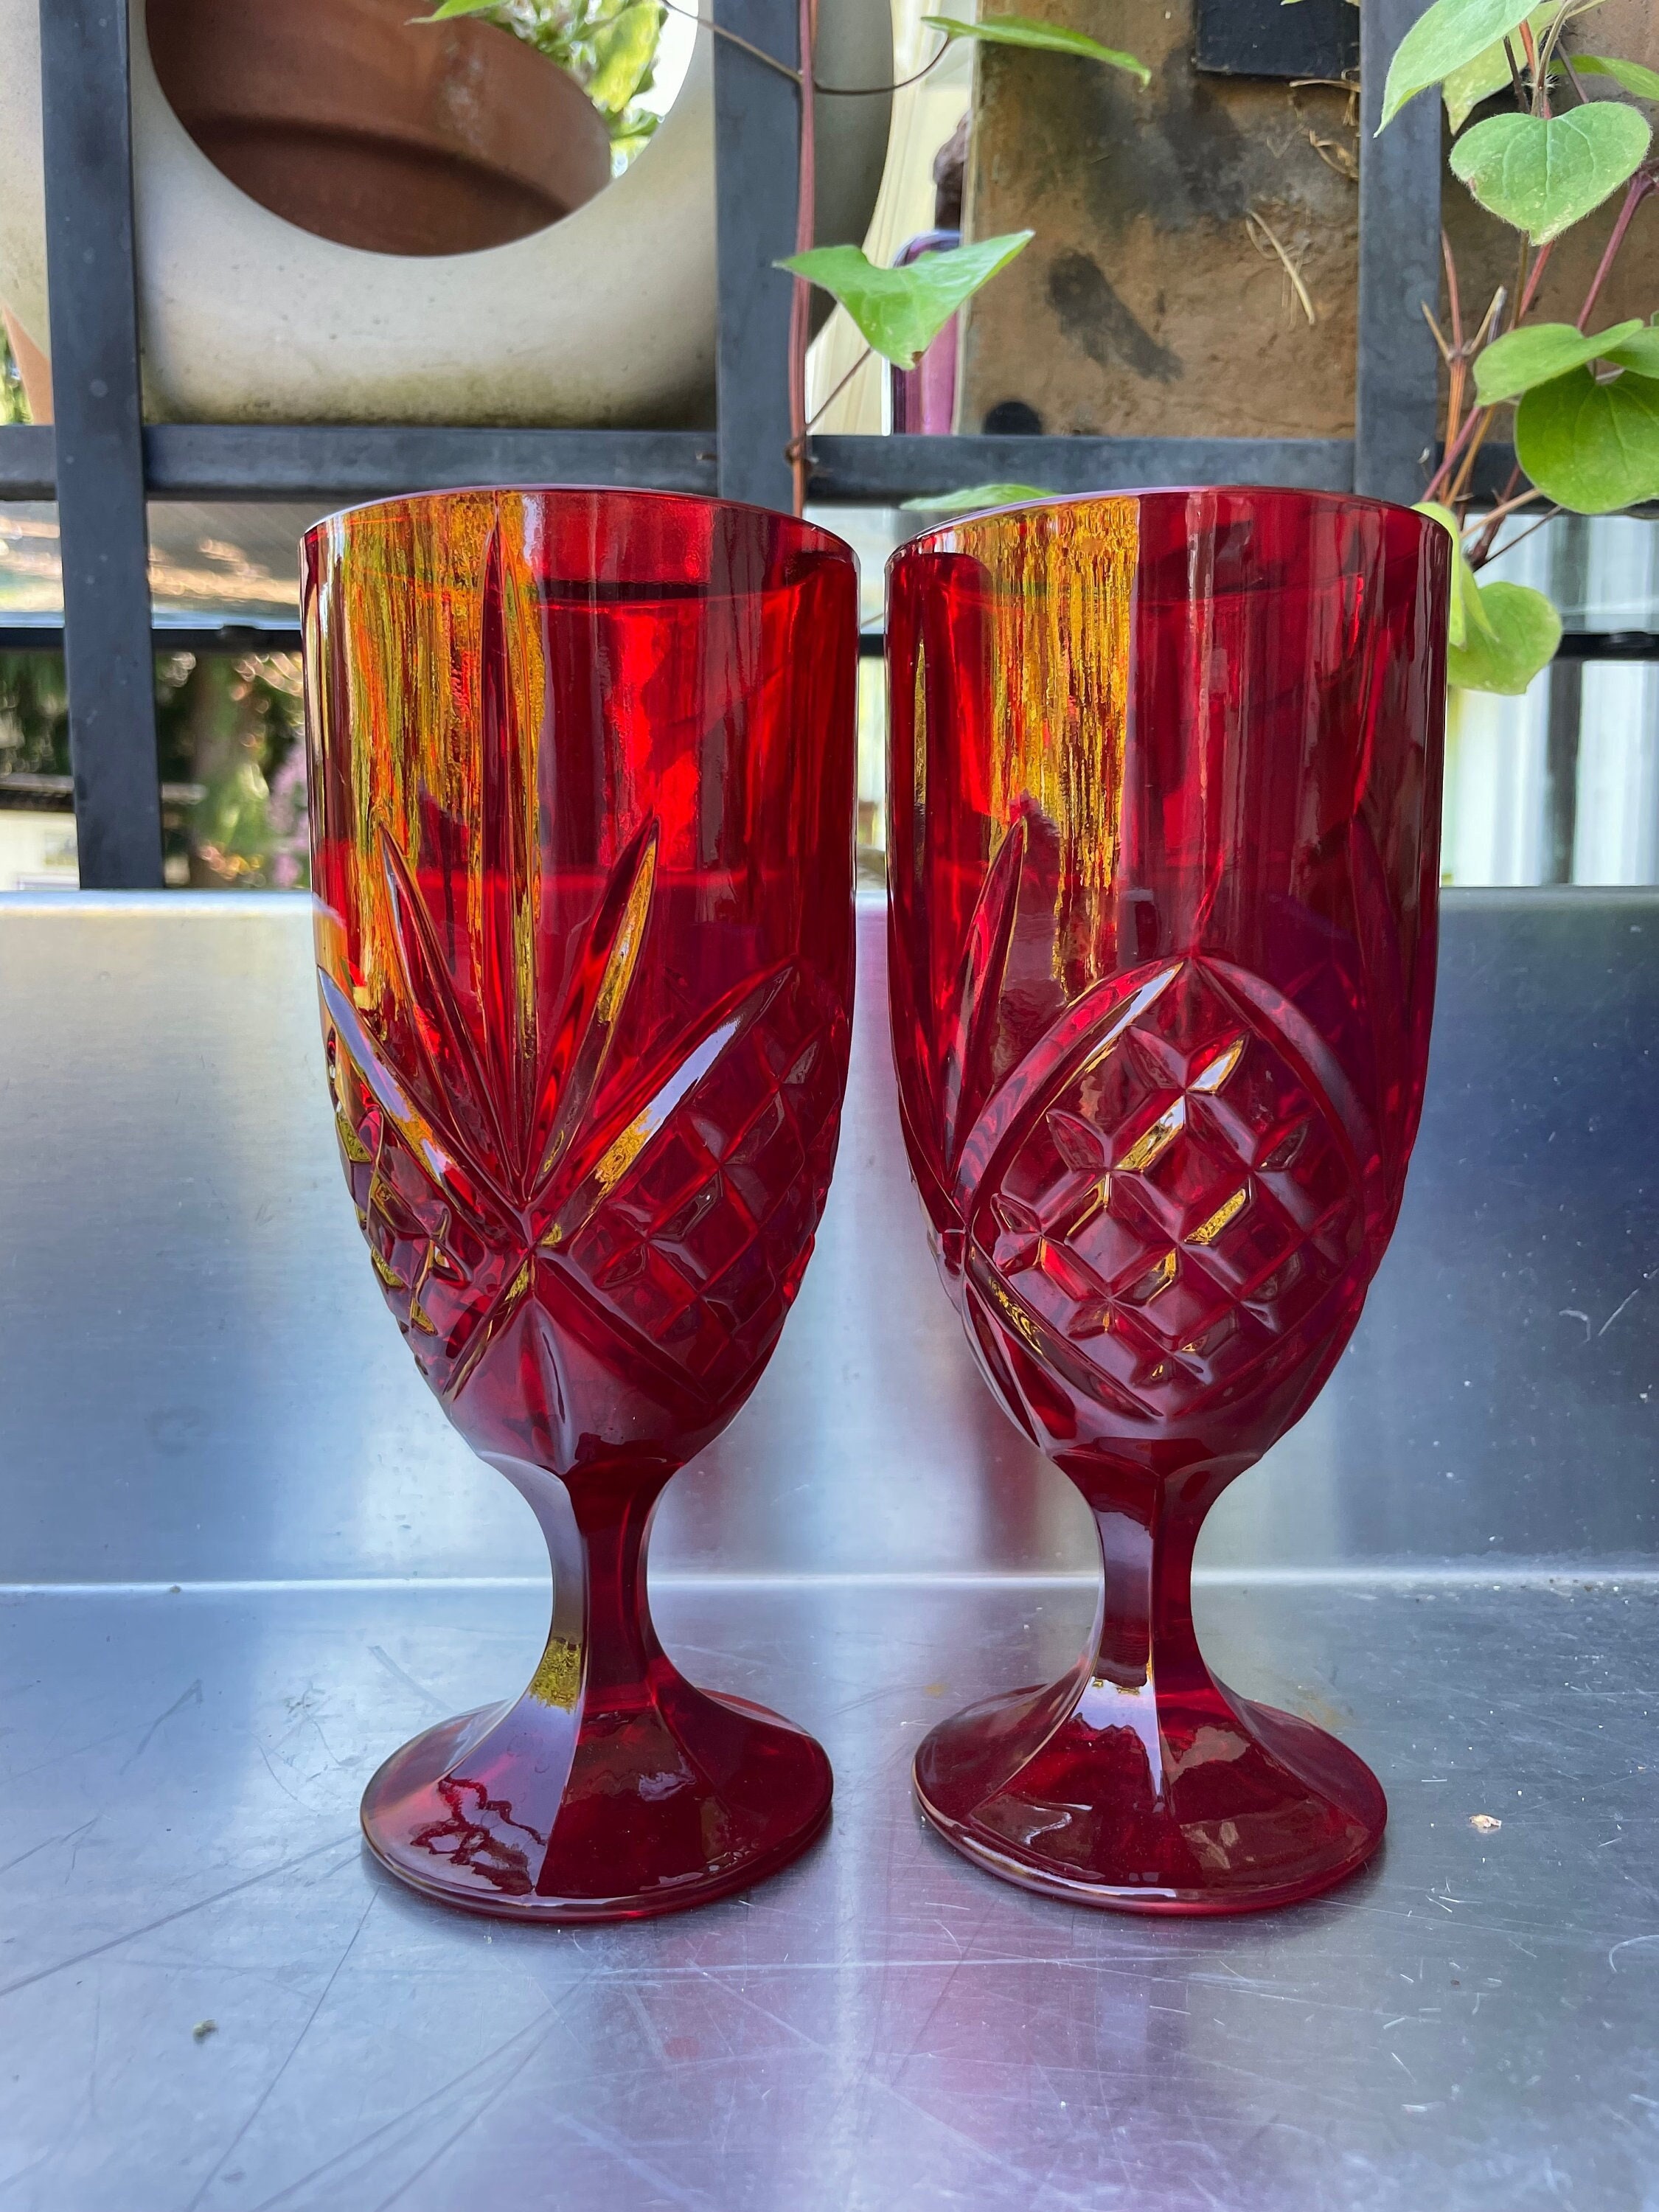 Lead Crystal Shannon DUBLIN 12 Wine Glasses Goblets Godinger Stemware